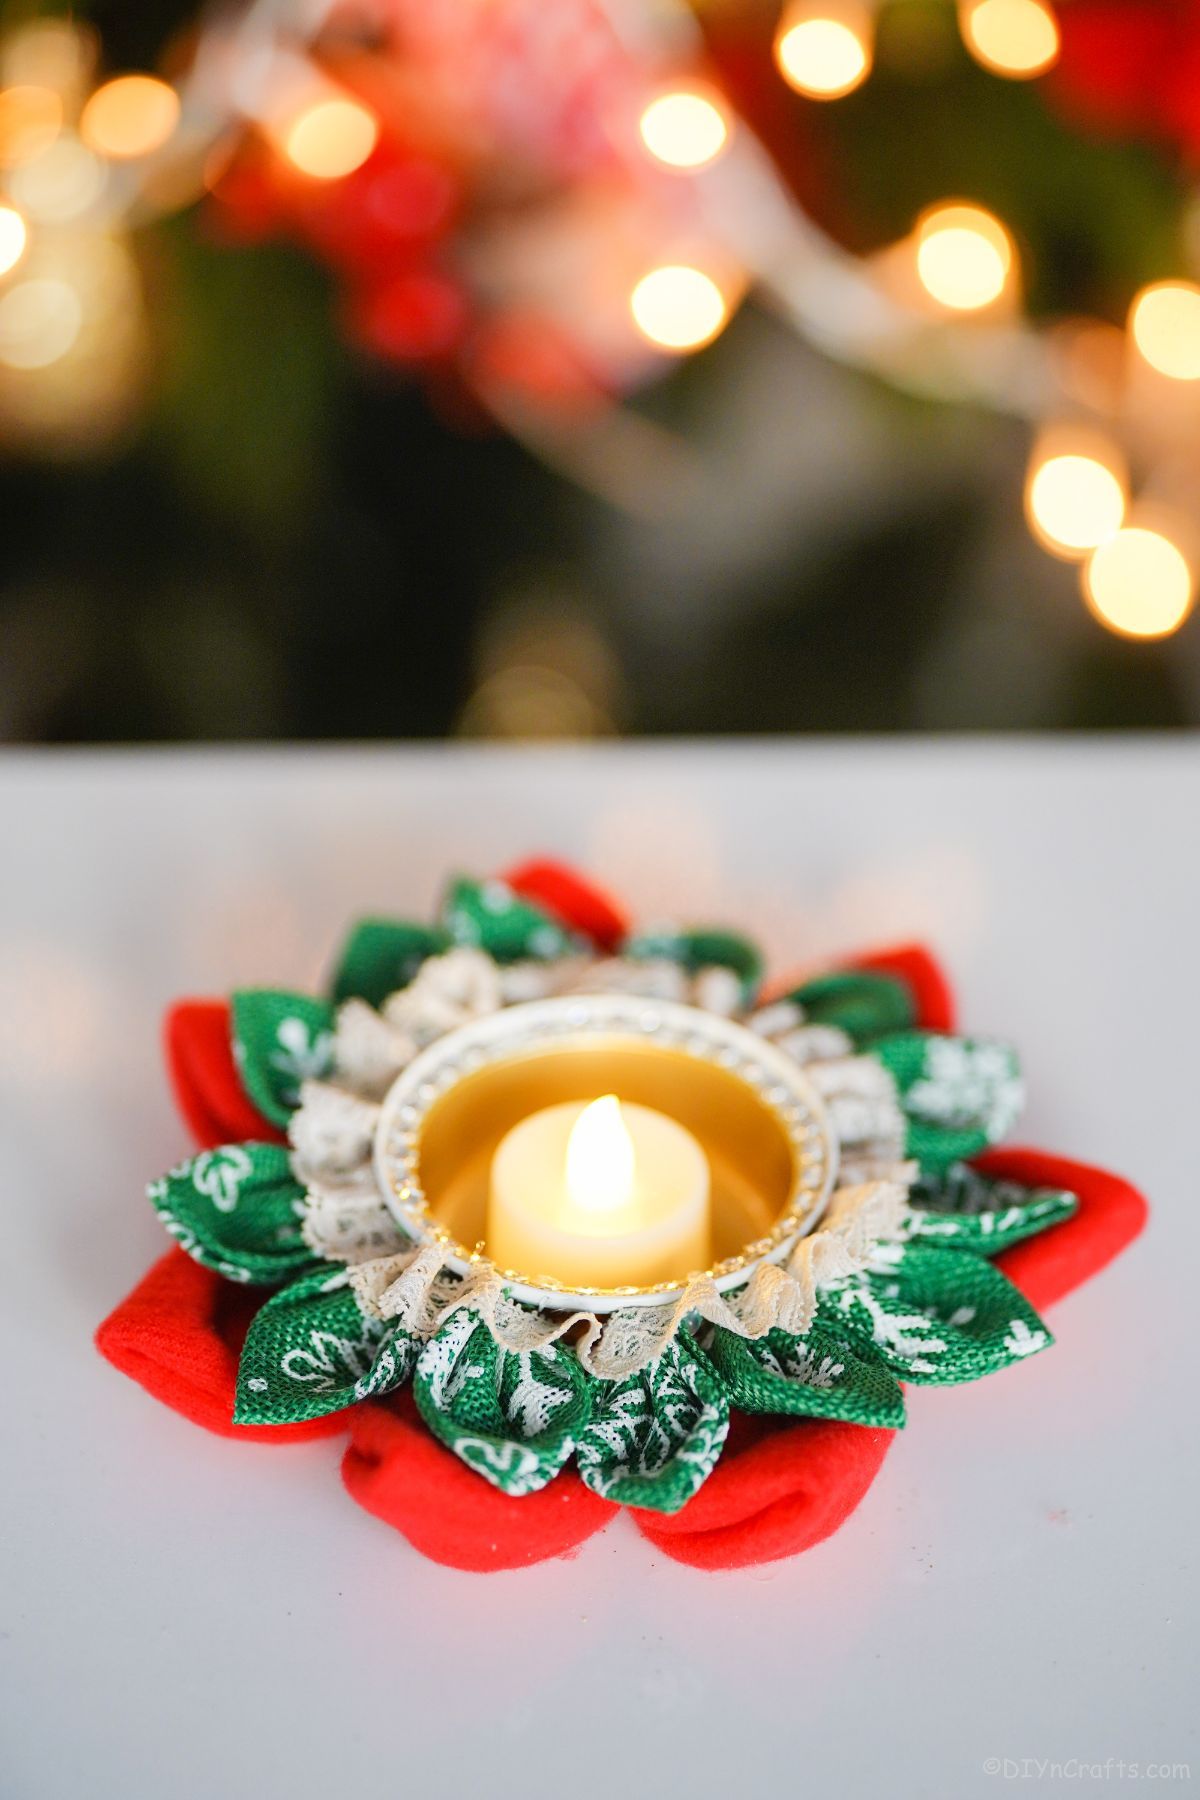 božični svečnik na mizi ob božičnem drevesu